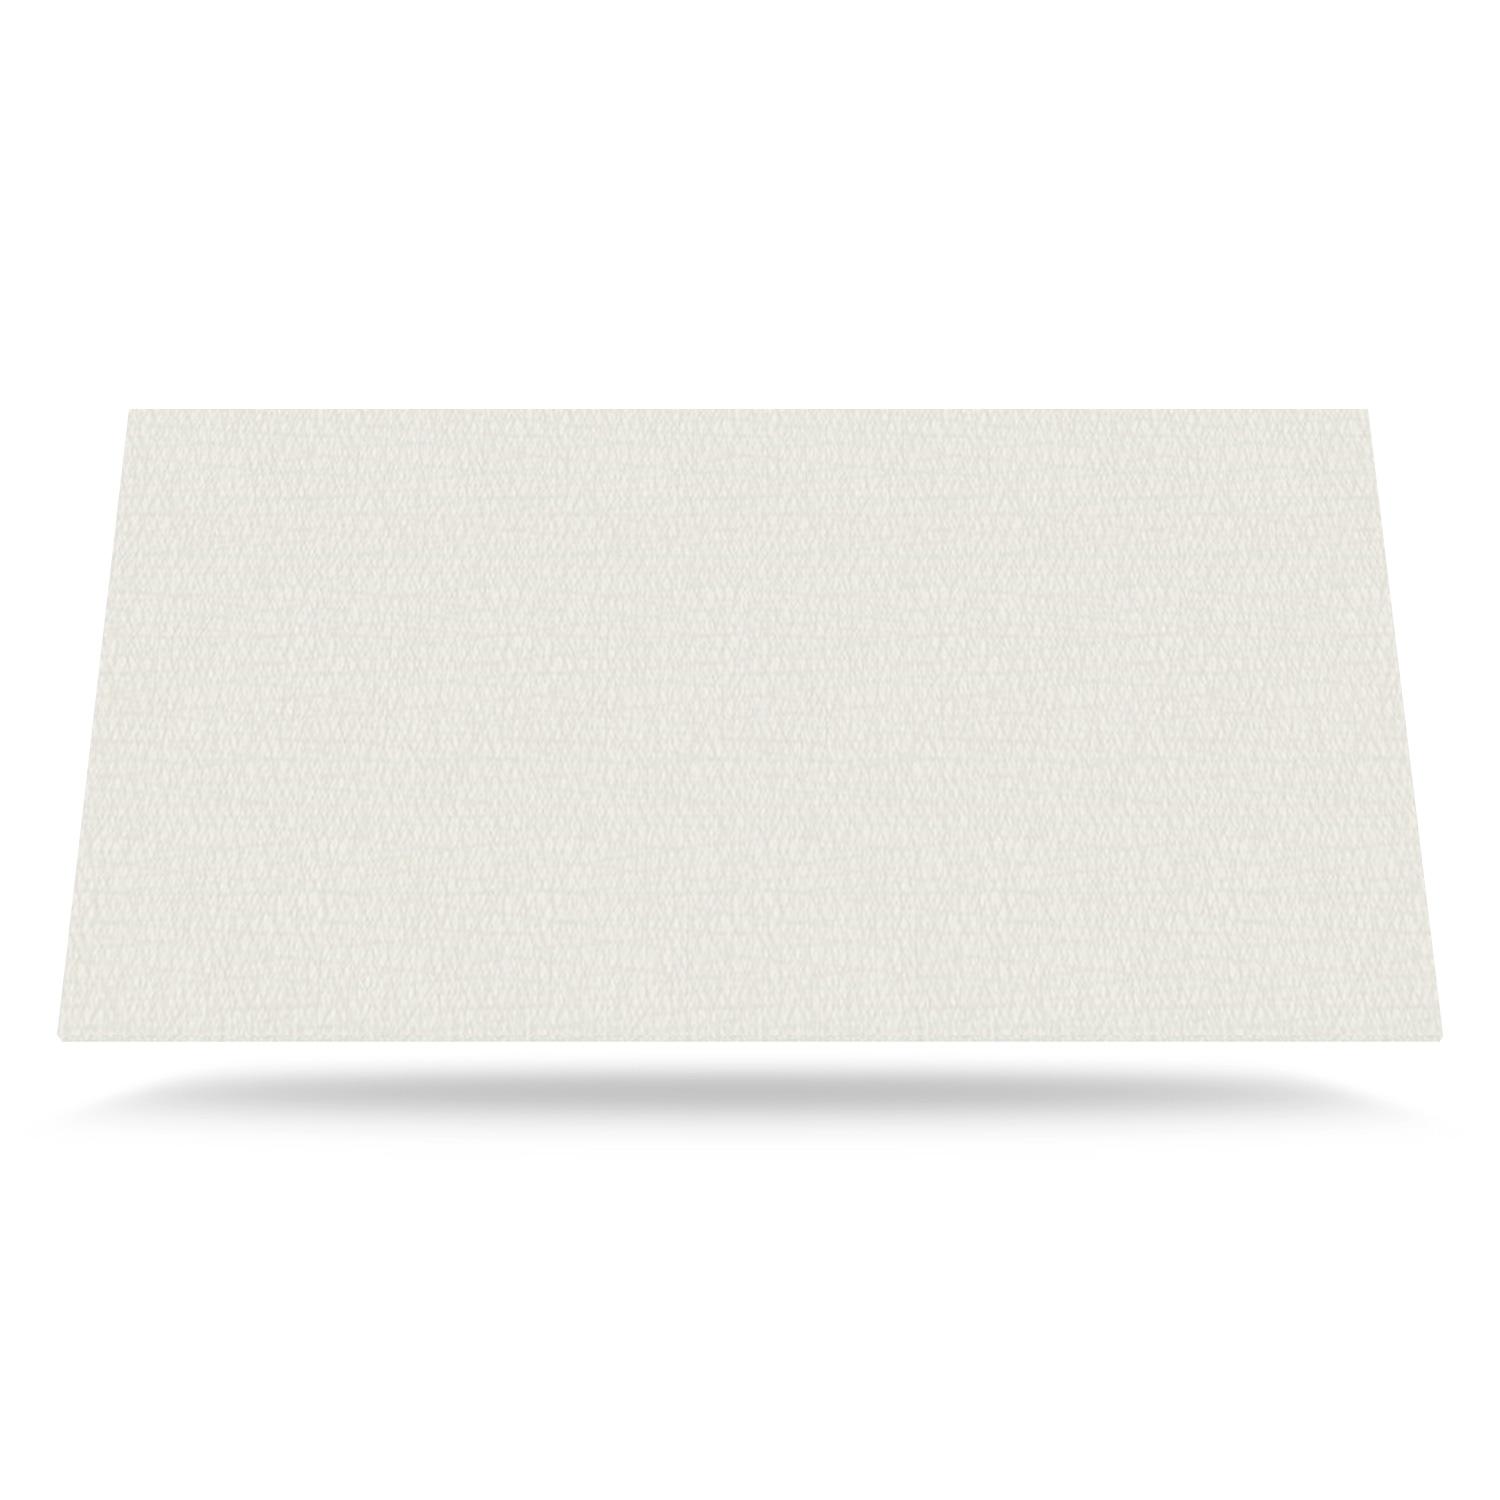 Beige Farve med tekstur - laminat bordplade på mål - 2139